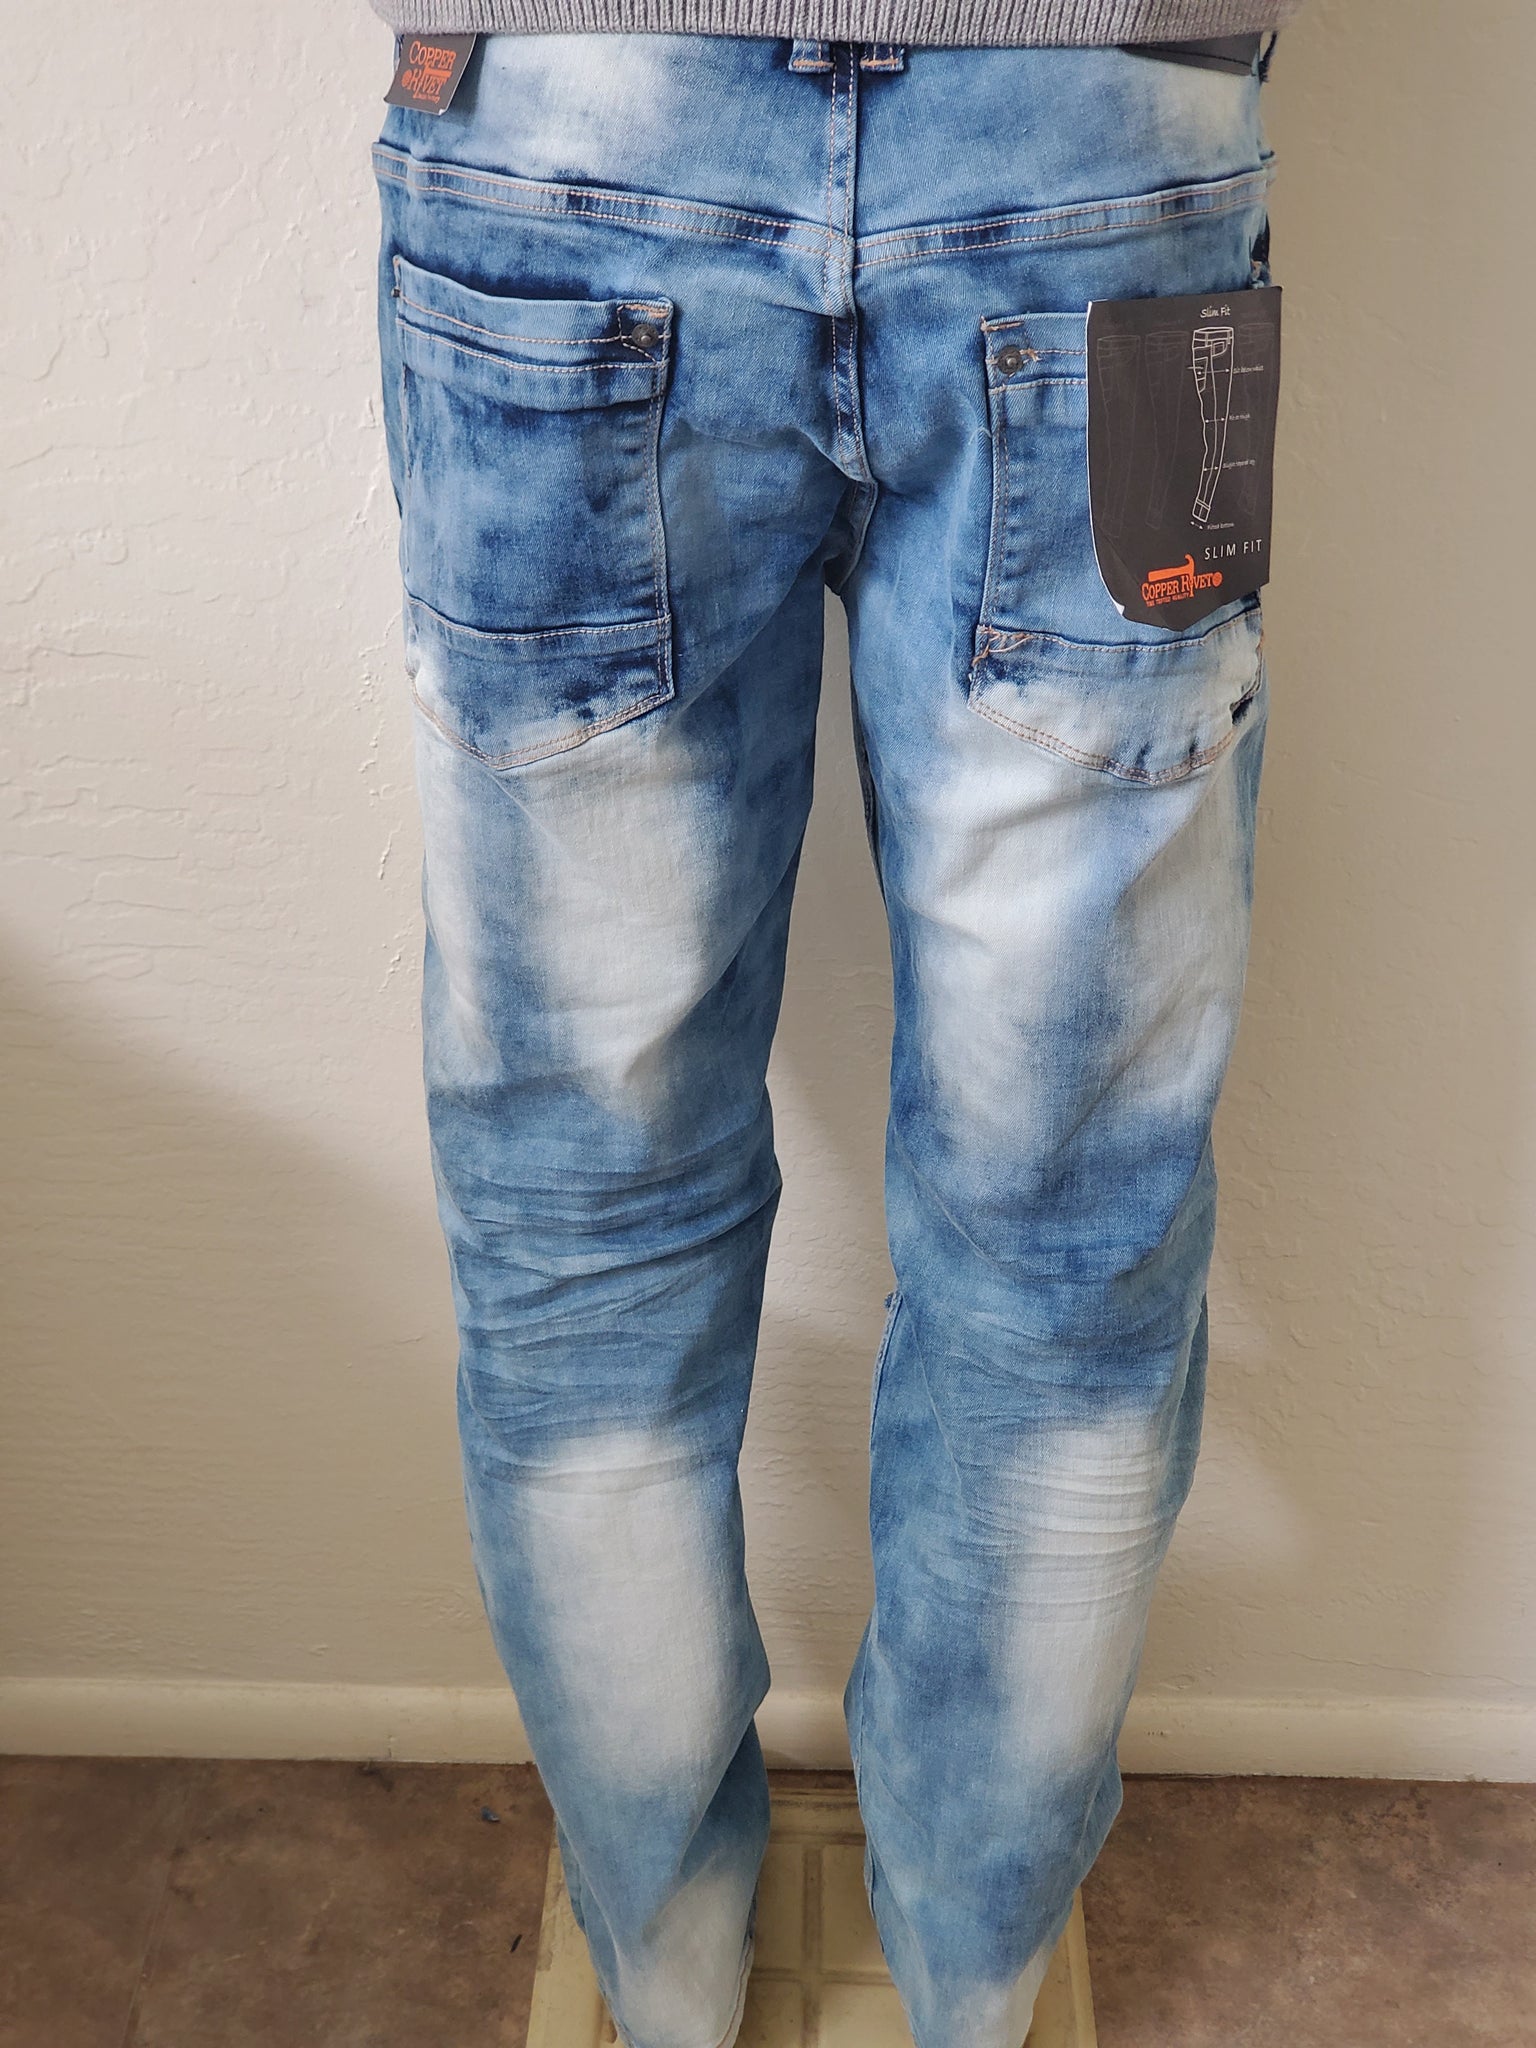 Fashion Jeans